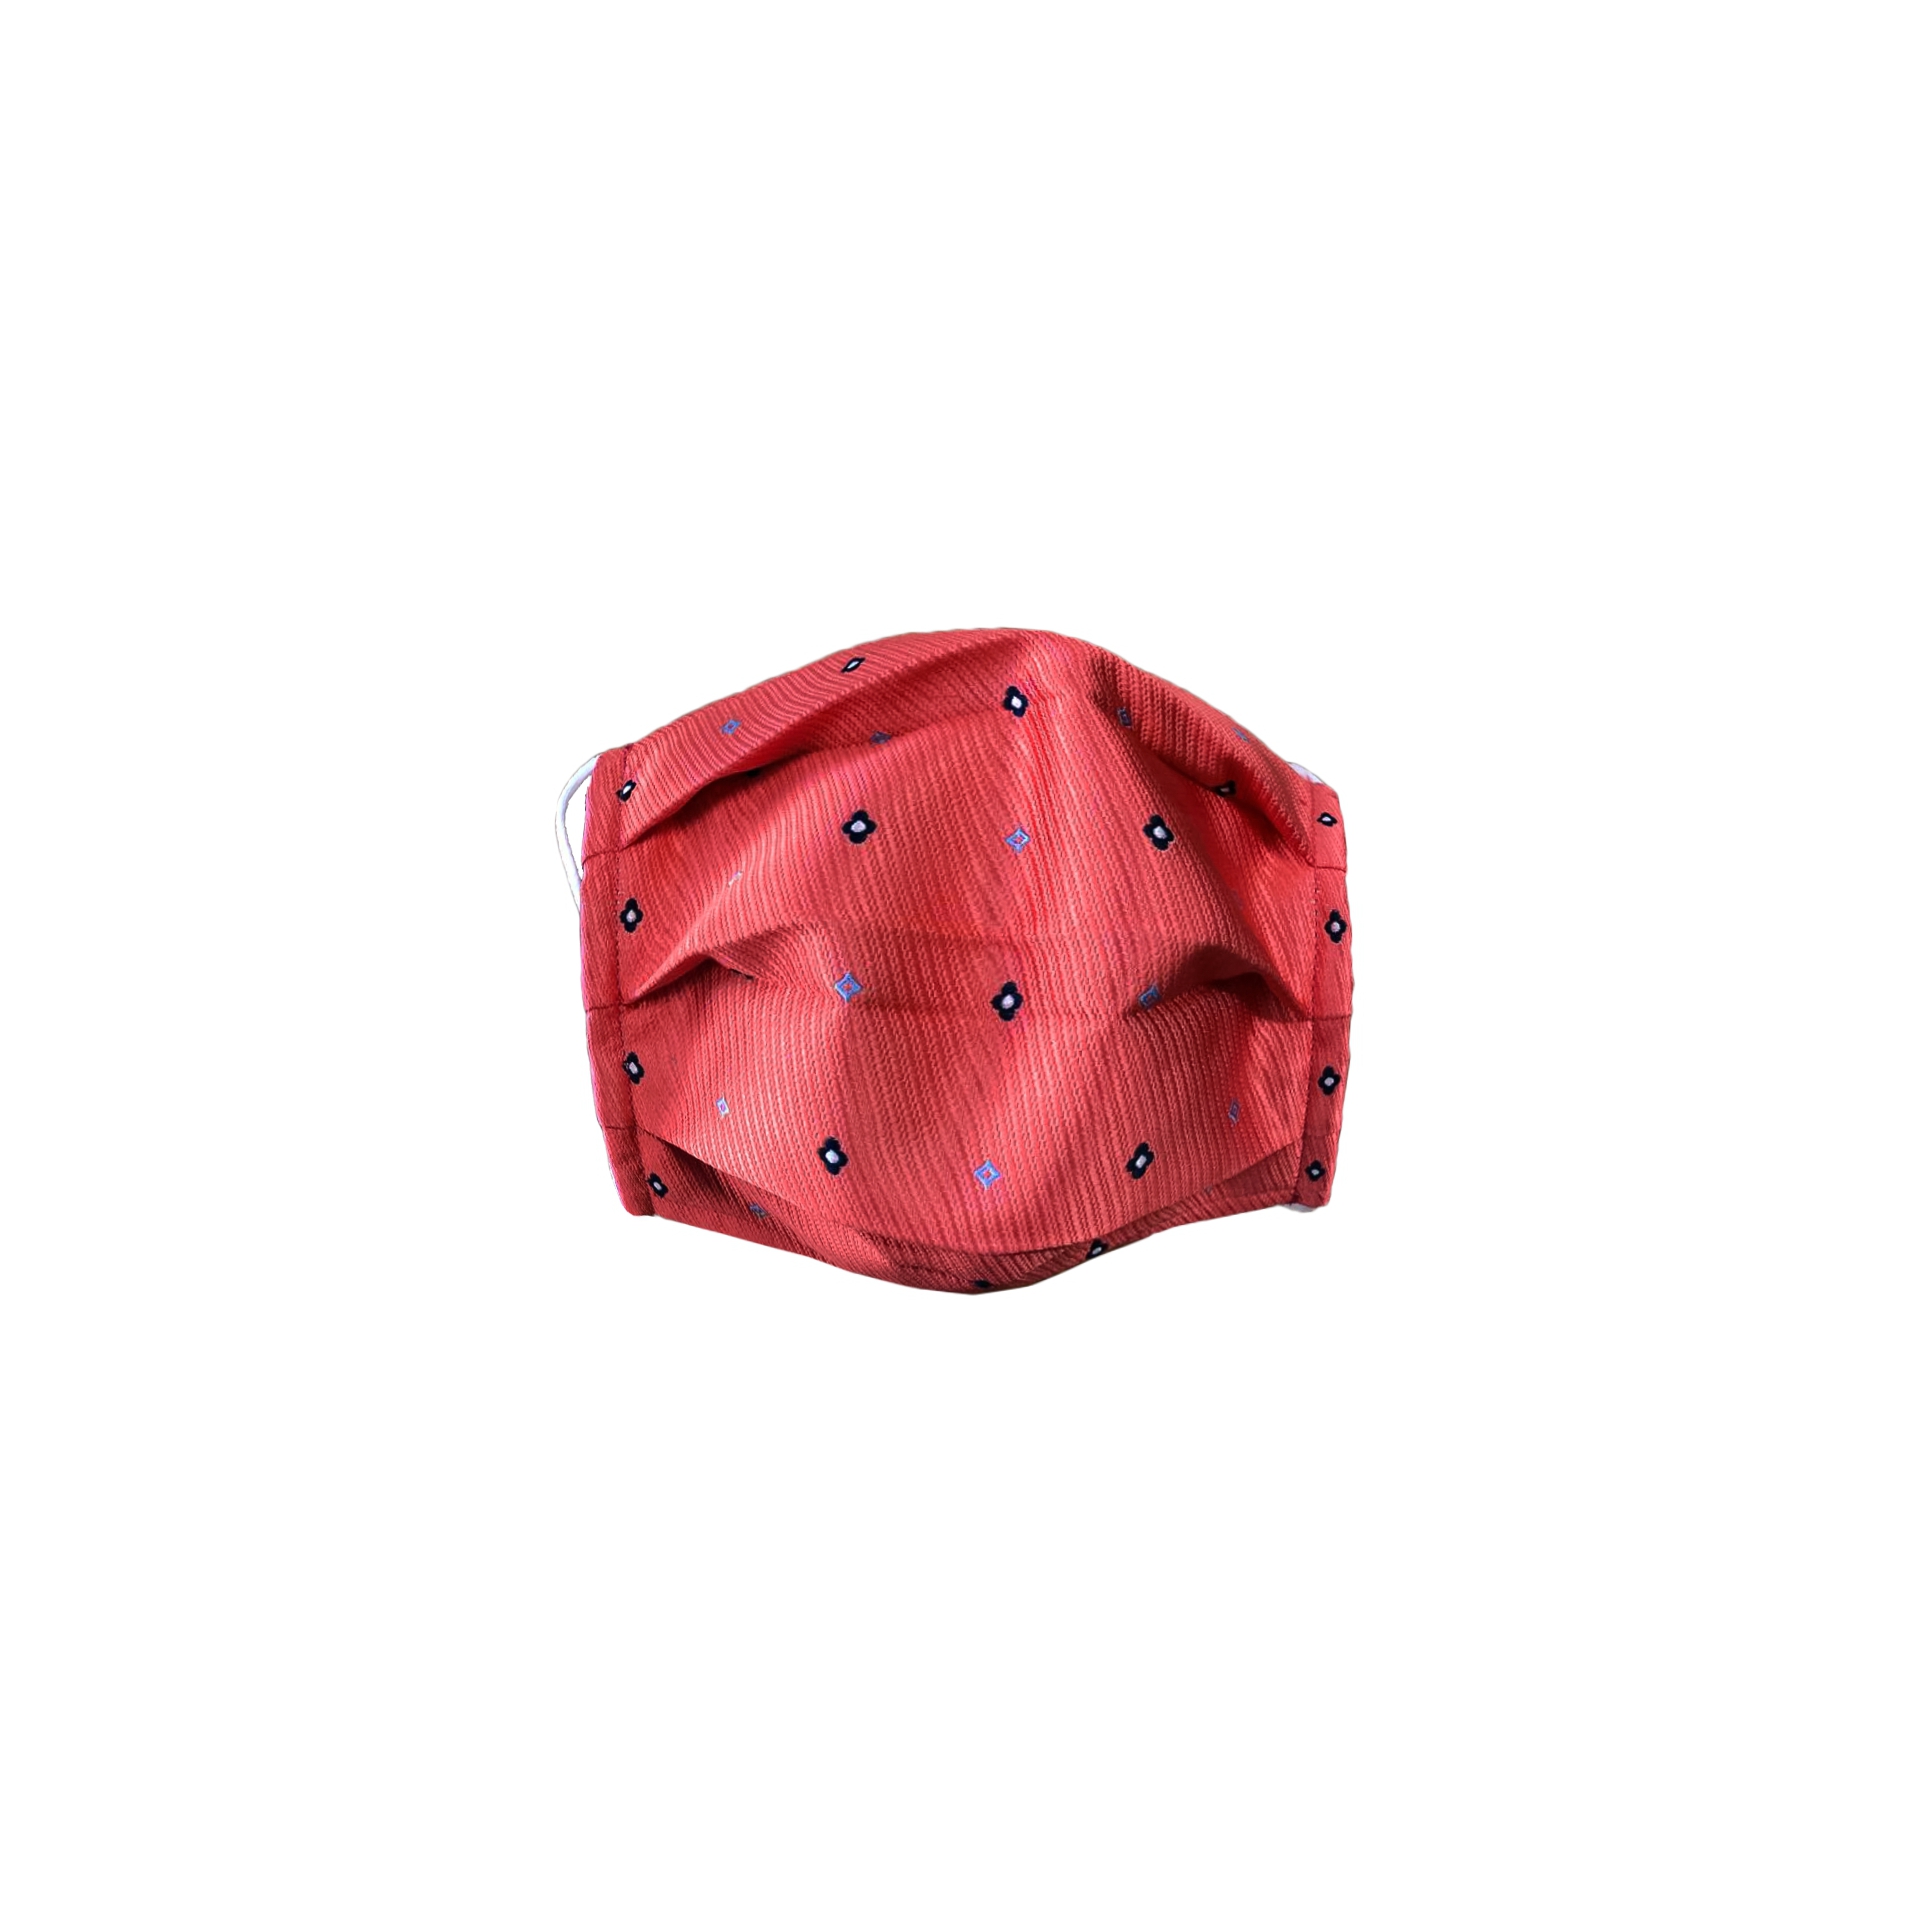 StyleMask Mascherina facciale filtrante in seta rosso corallo monogram